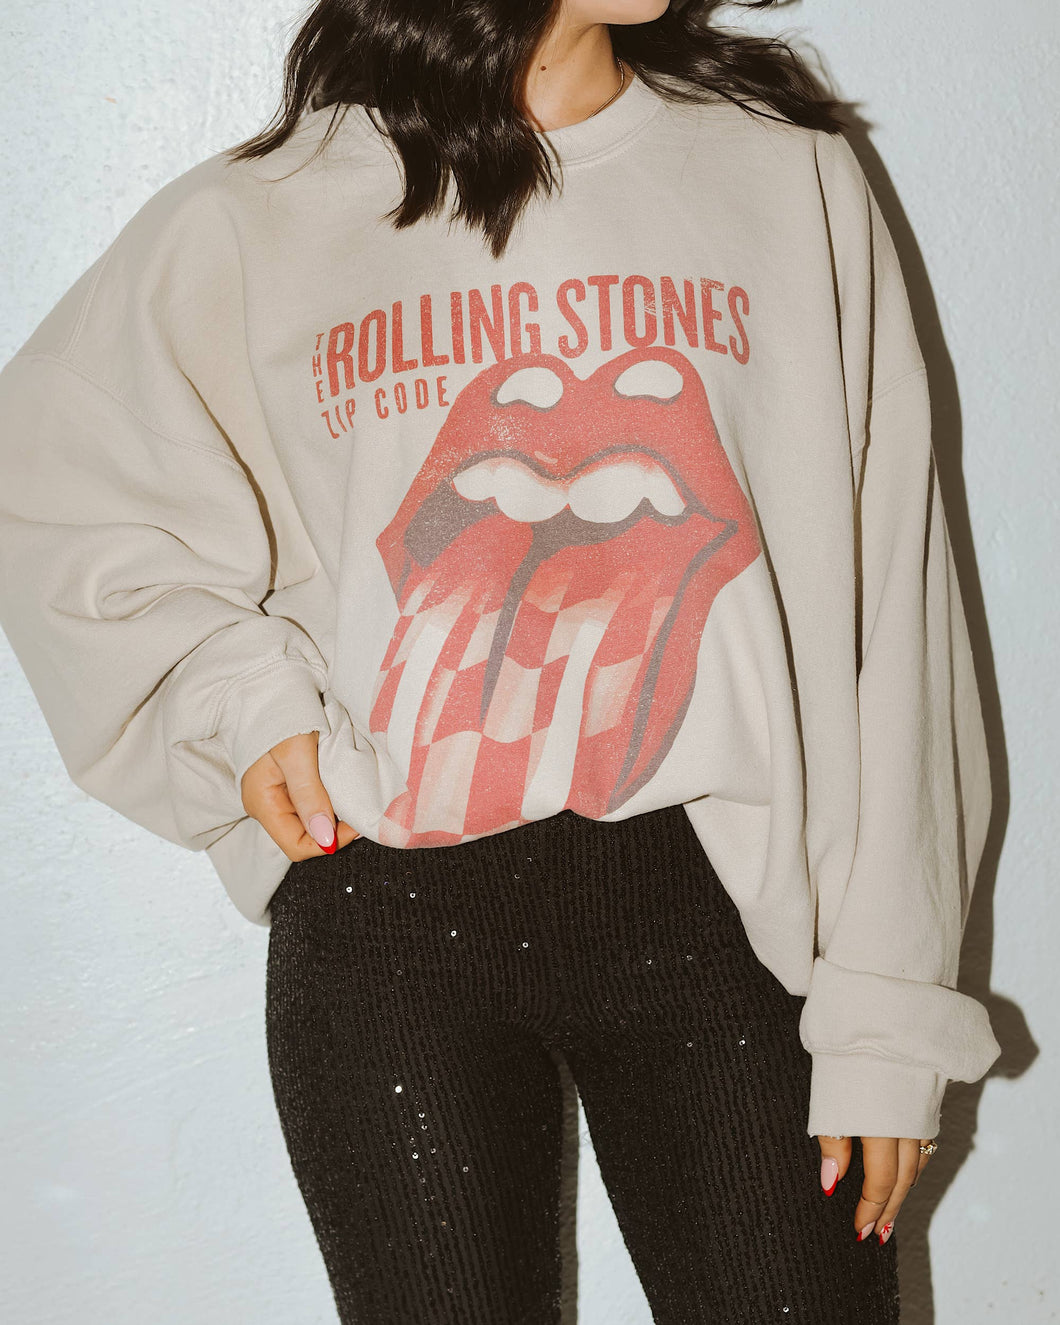 Rolling Stones Zip Code Sand Thrifted Sweatshirt